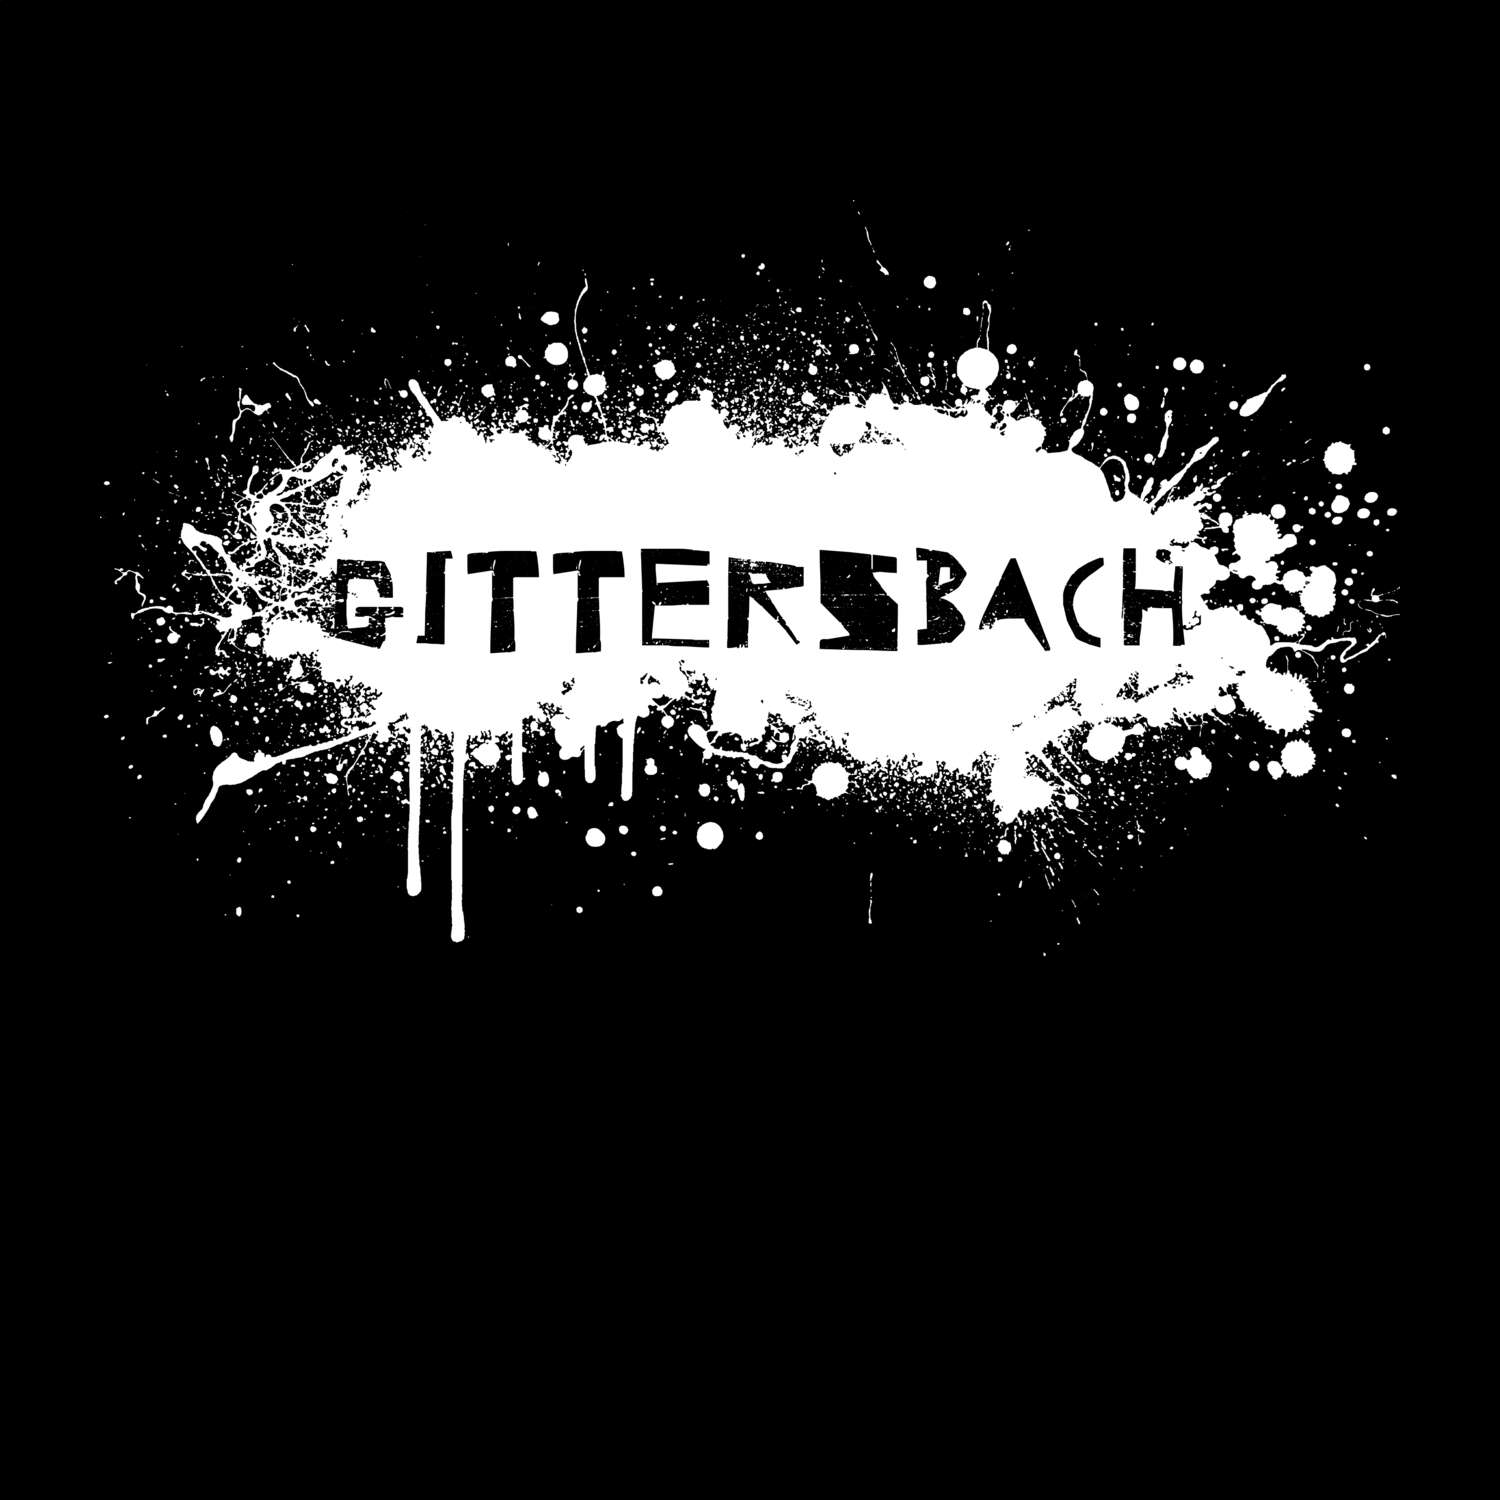 Gittersbach T-Shirt »Paint Splash Punk«